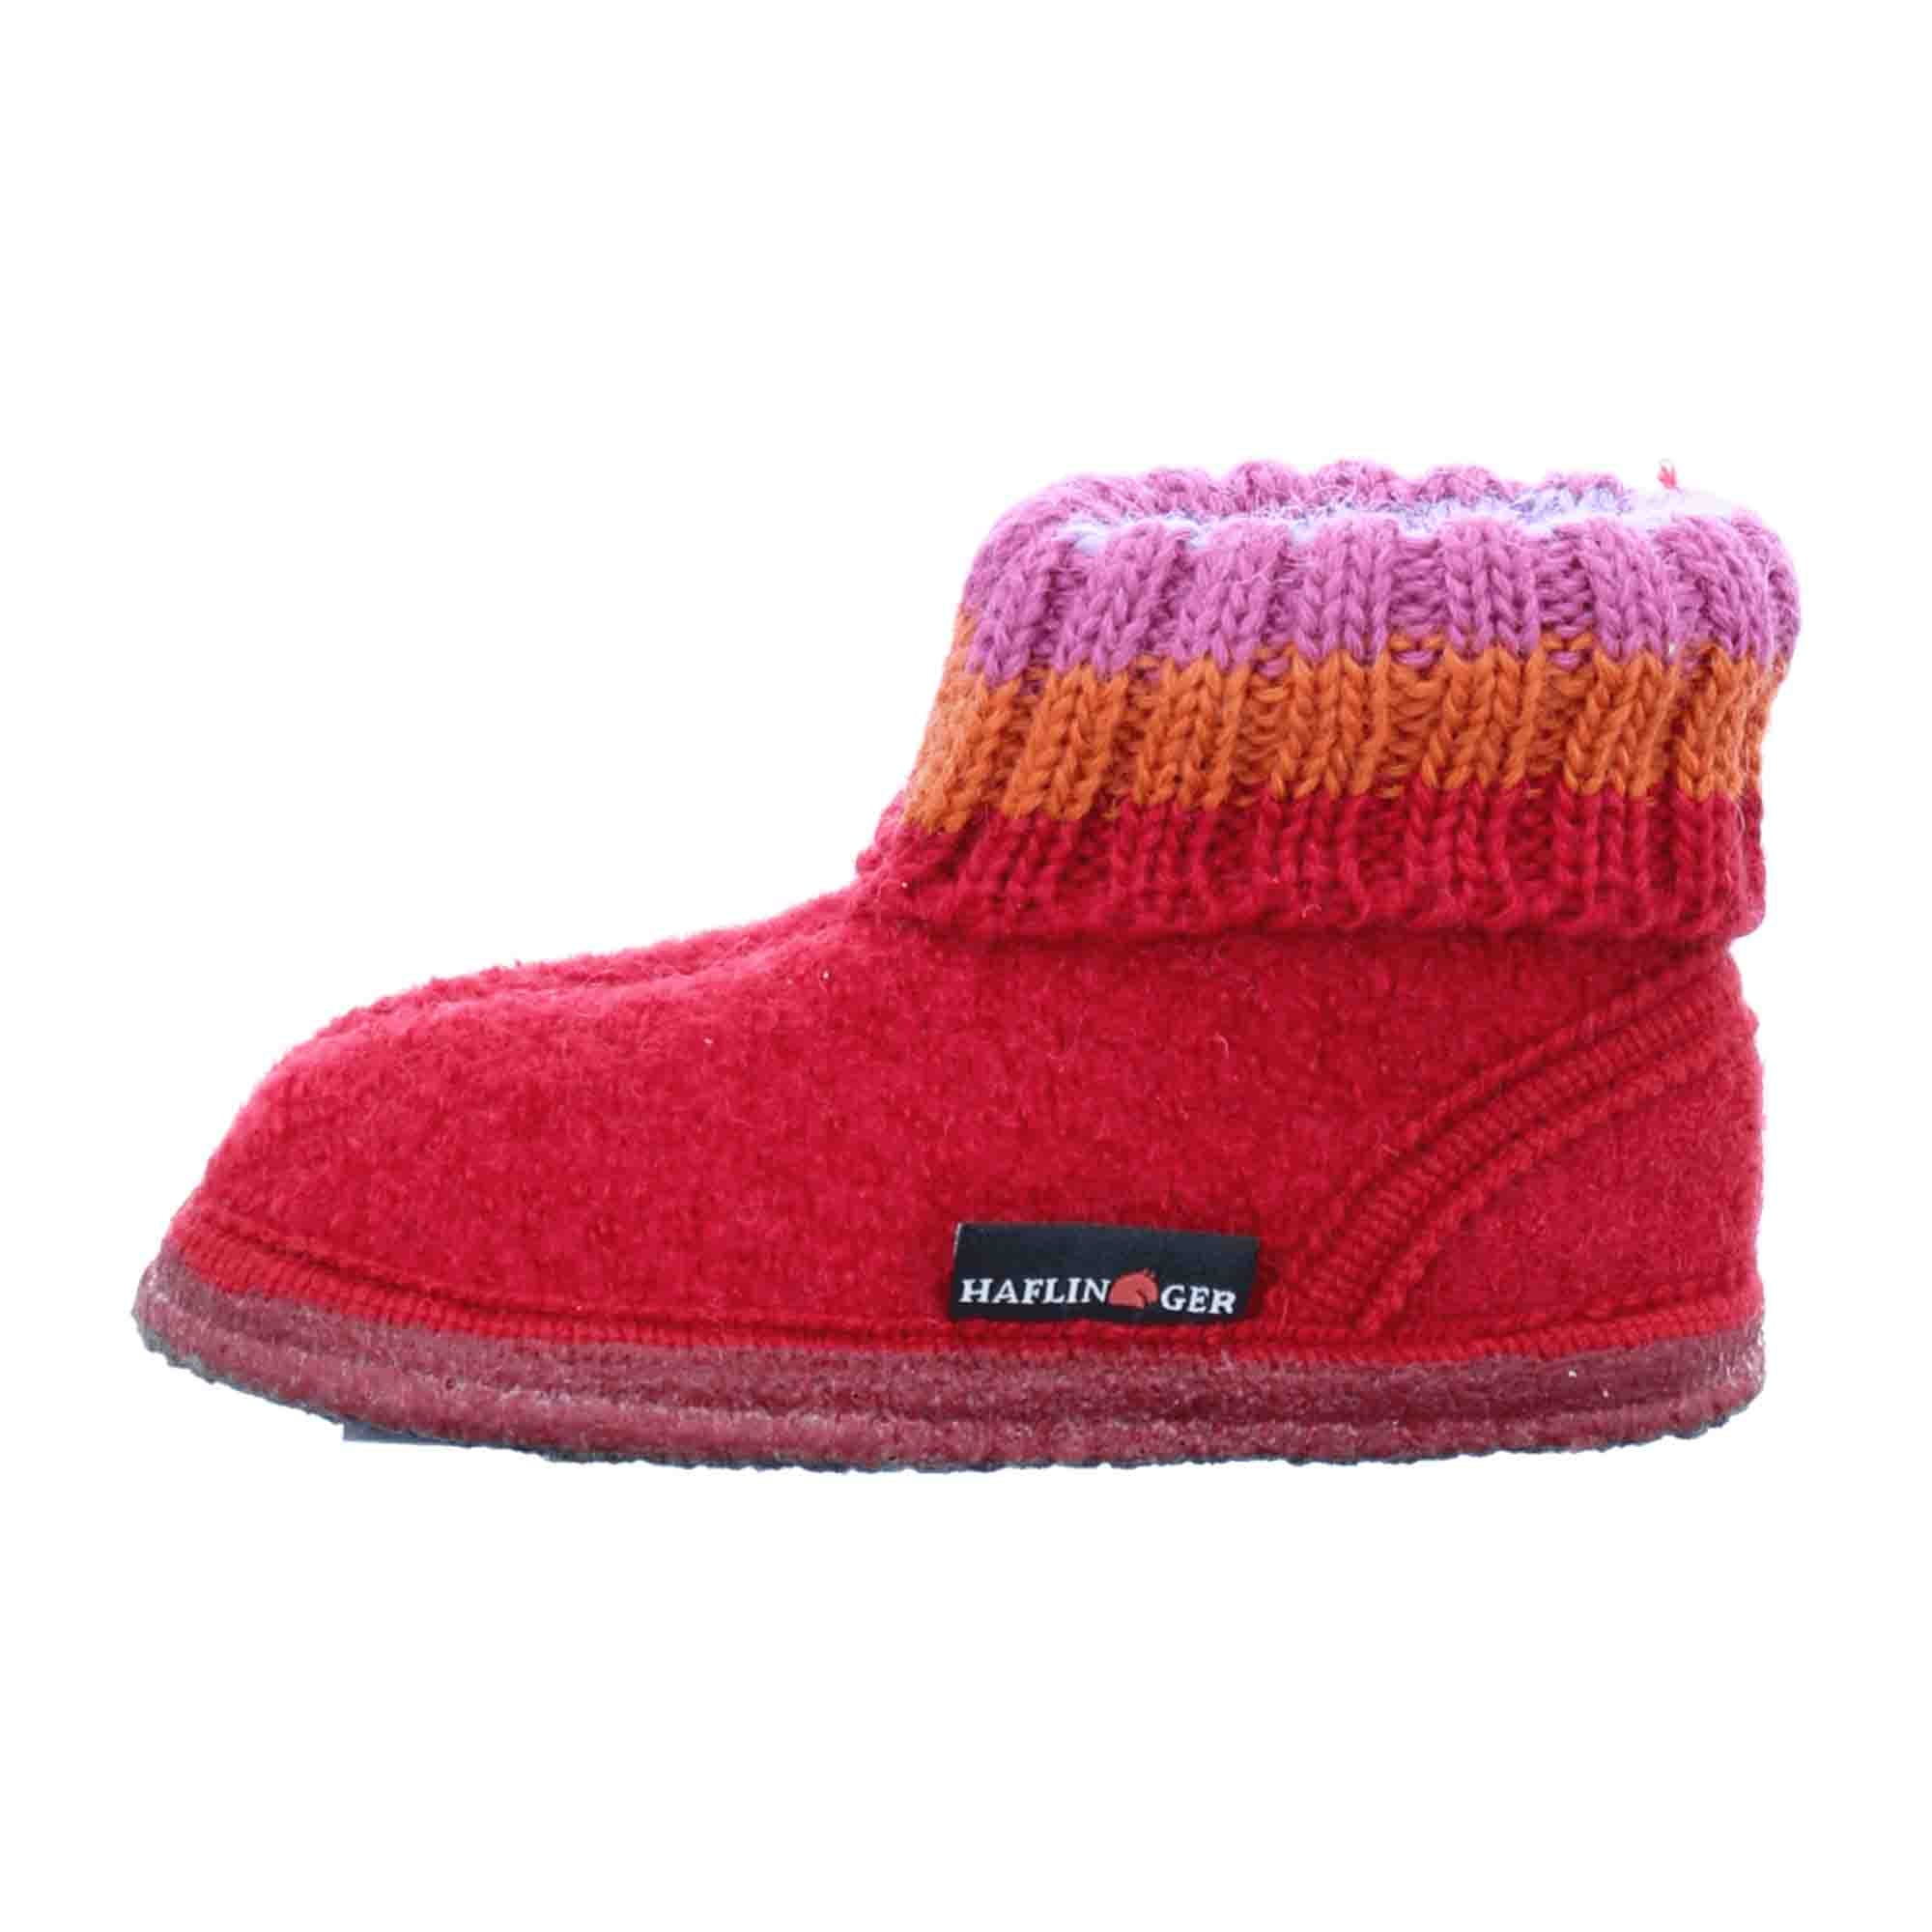 Haflinger Kids' Durable Red Shoes Model 11-44-61866